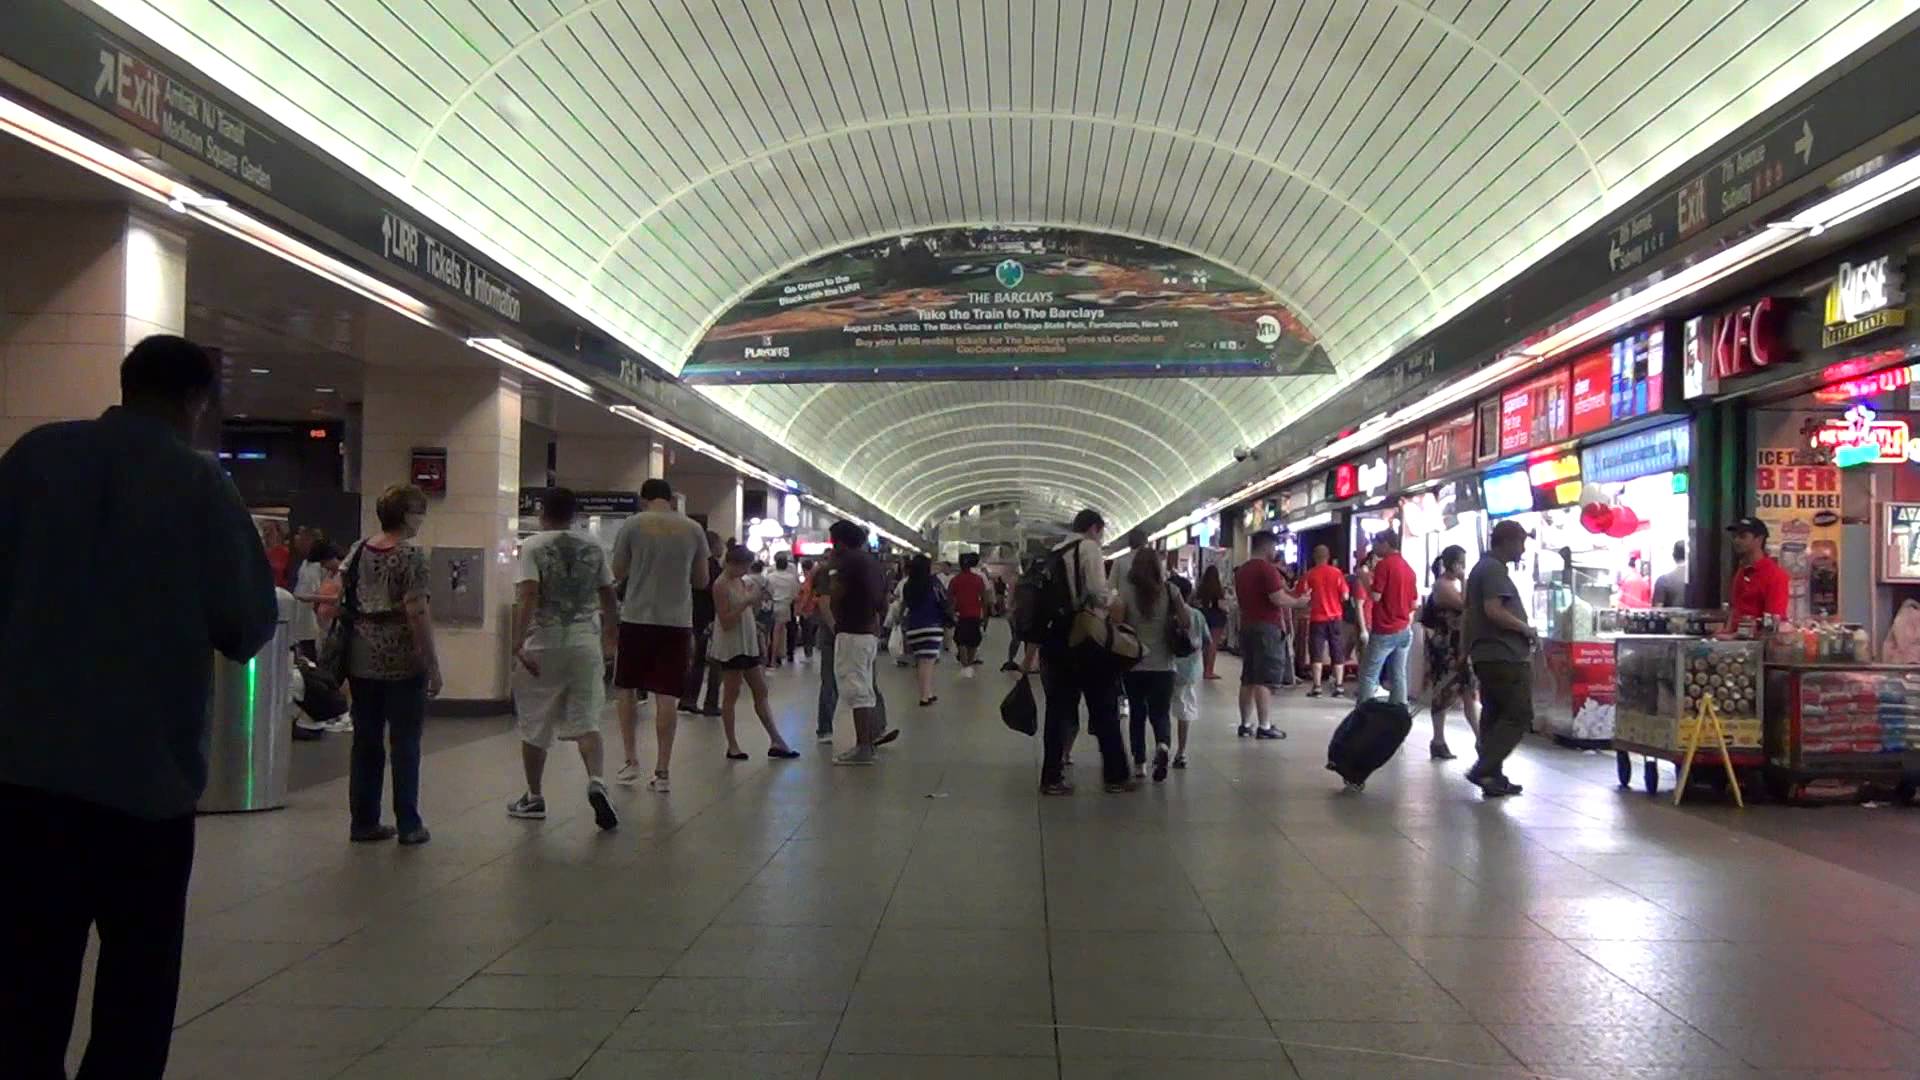 inside penn station new york - YouTube